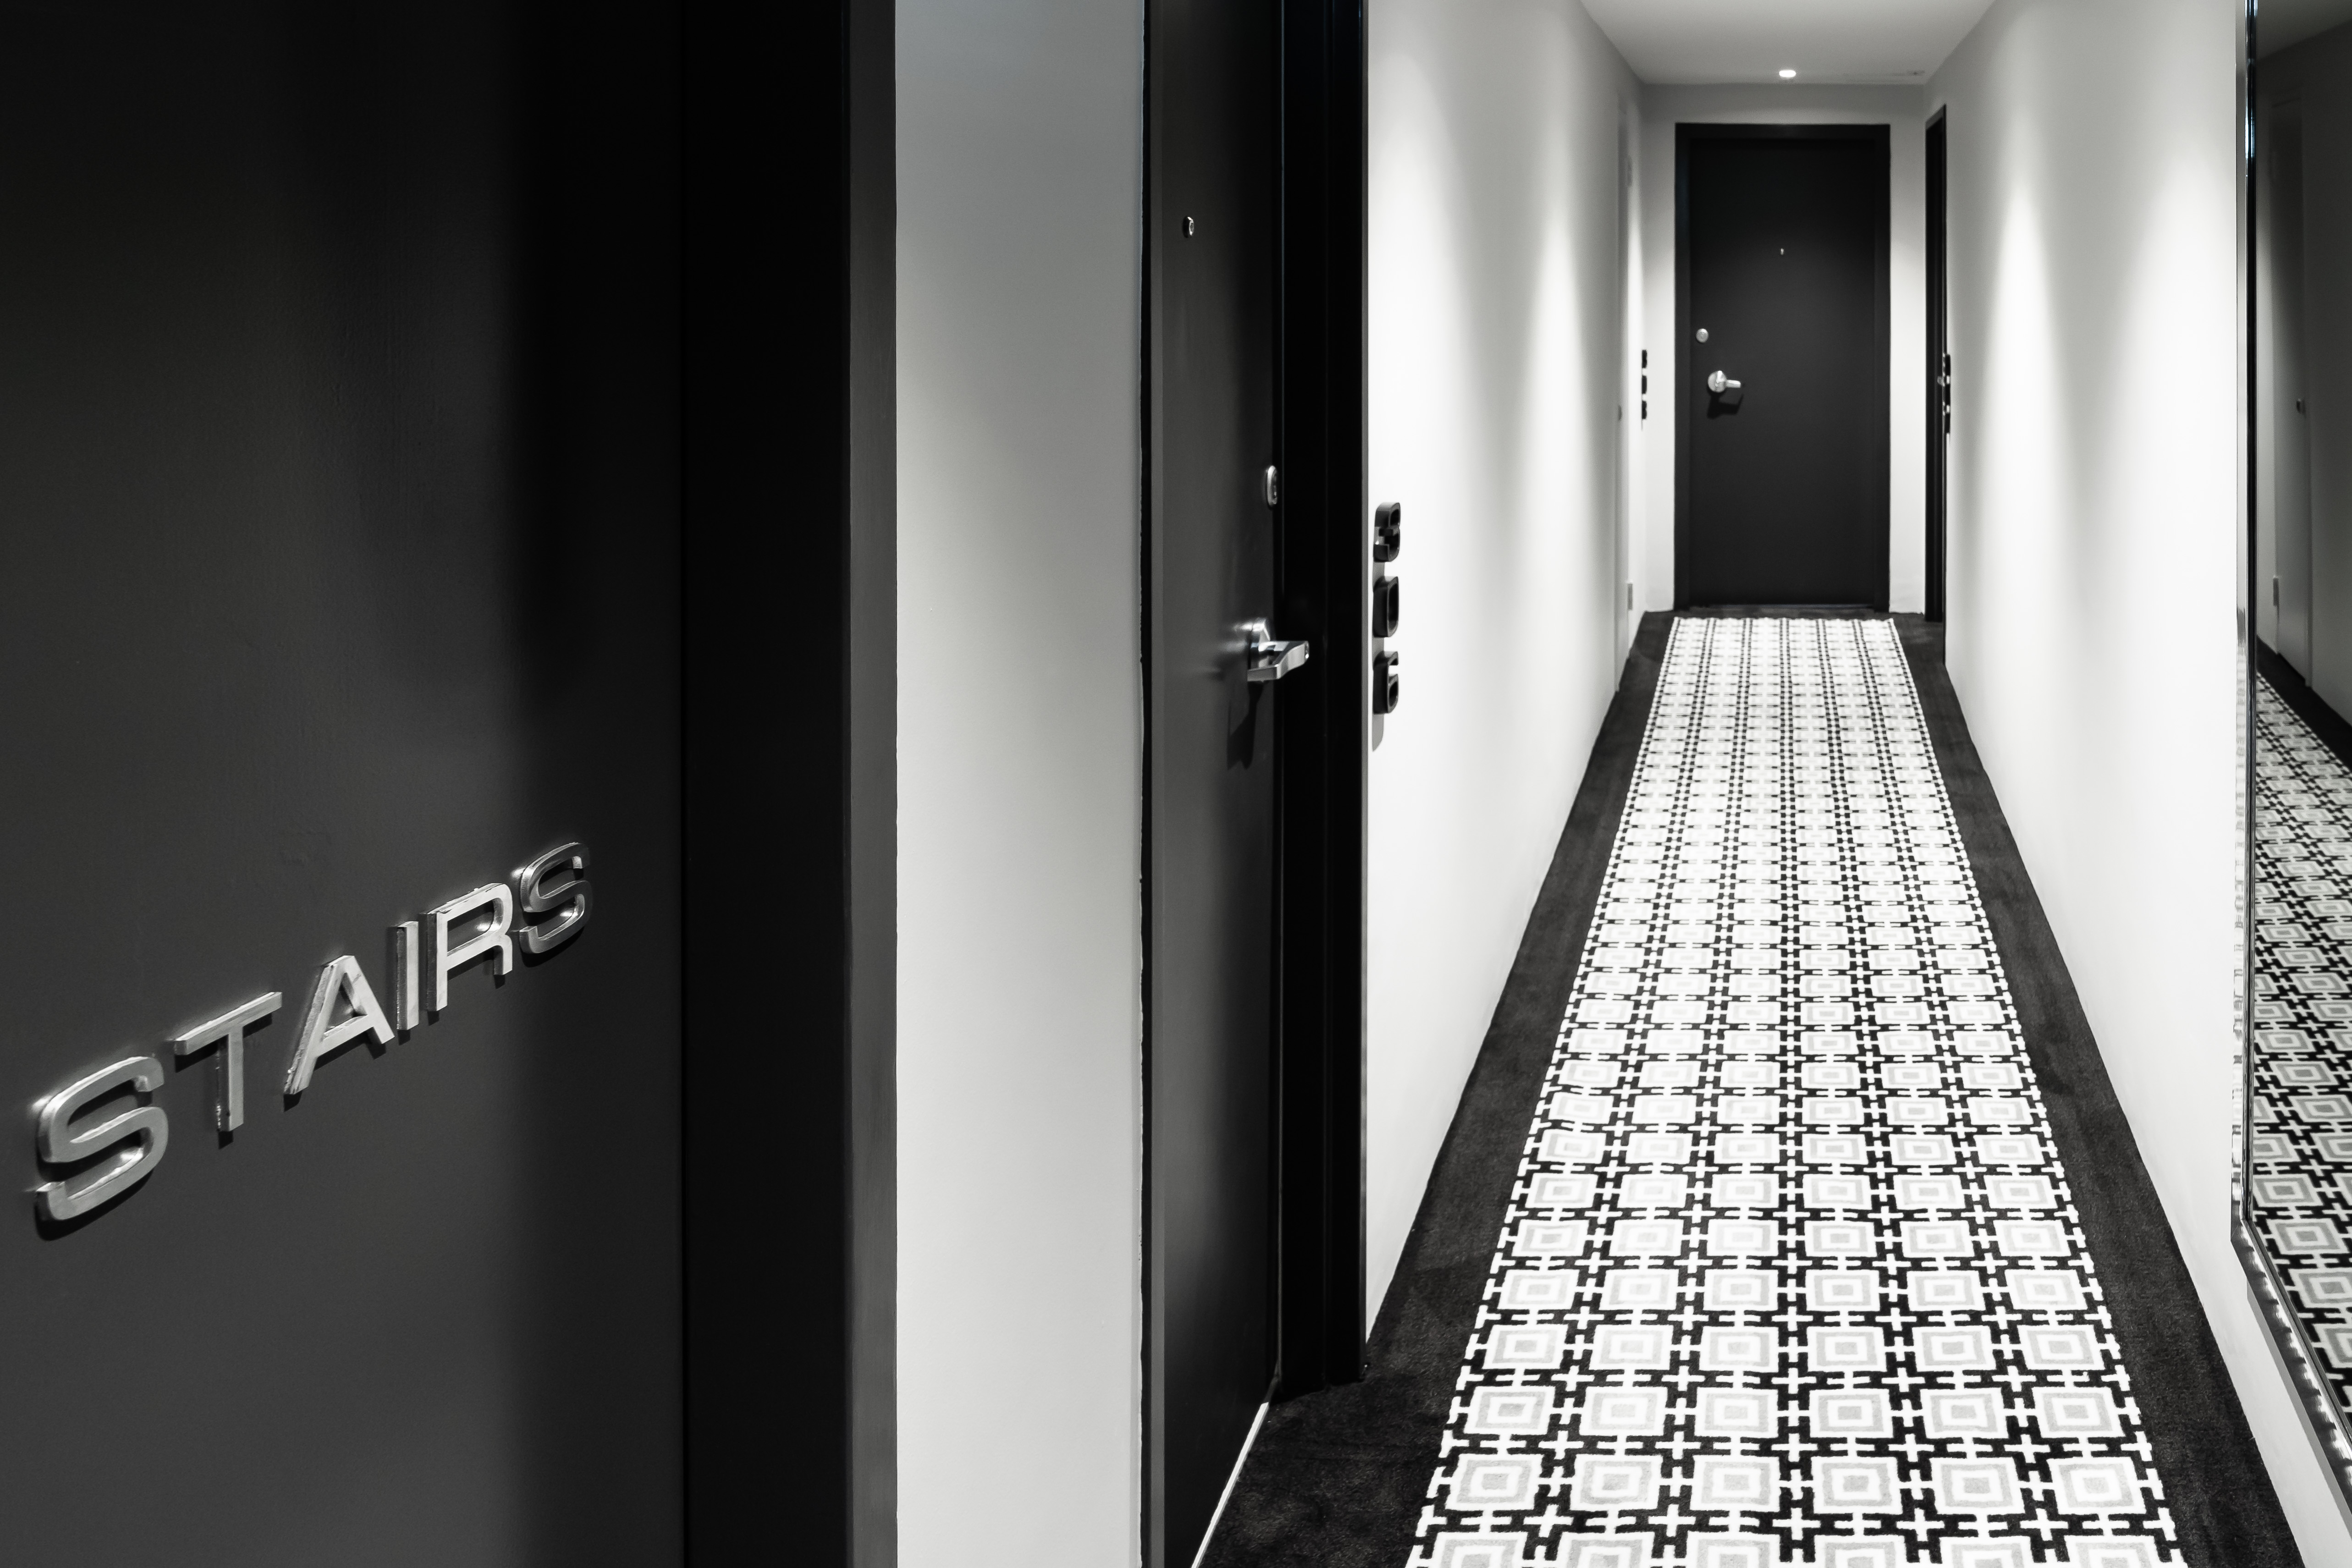 Sydney apartment building interior designer hallways common areas